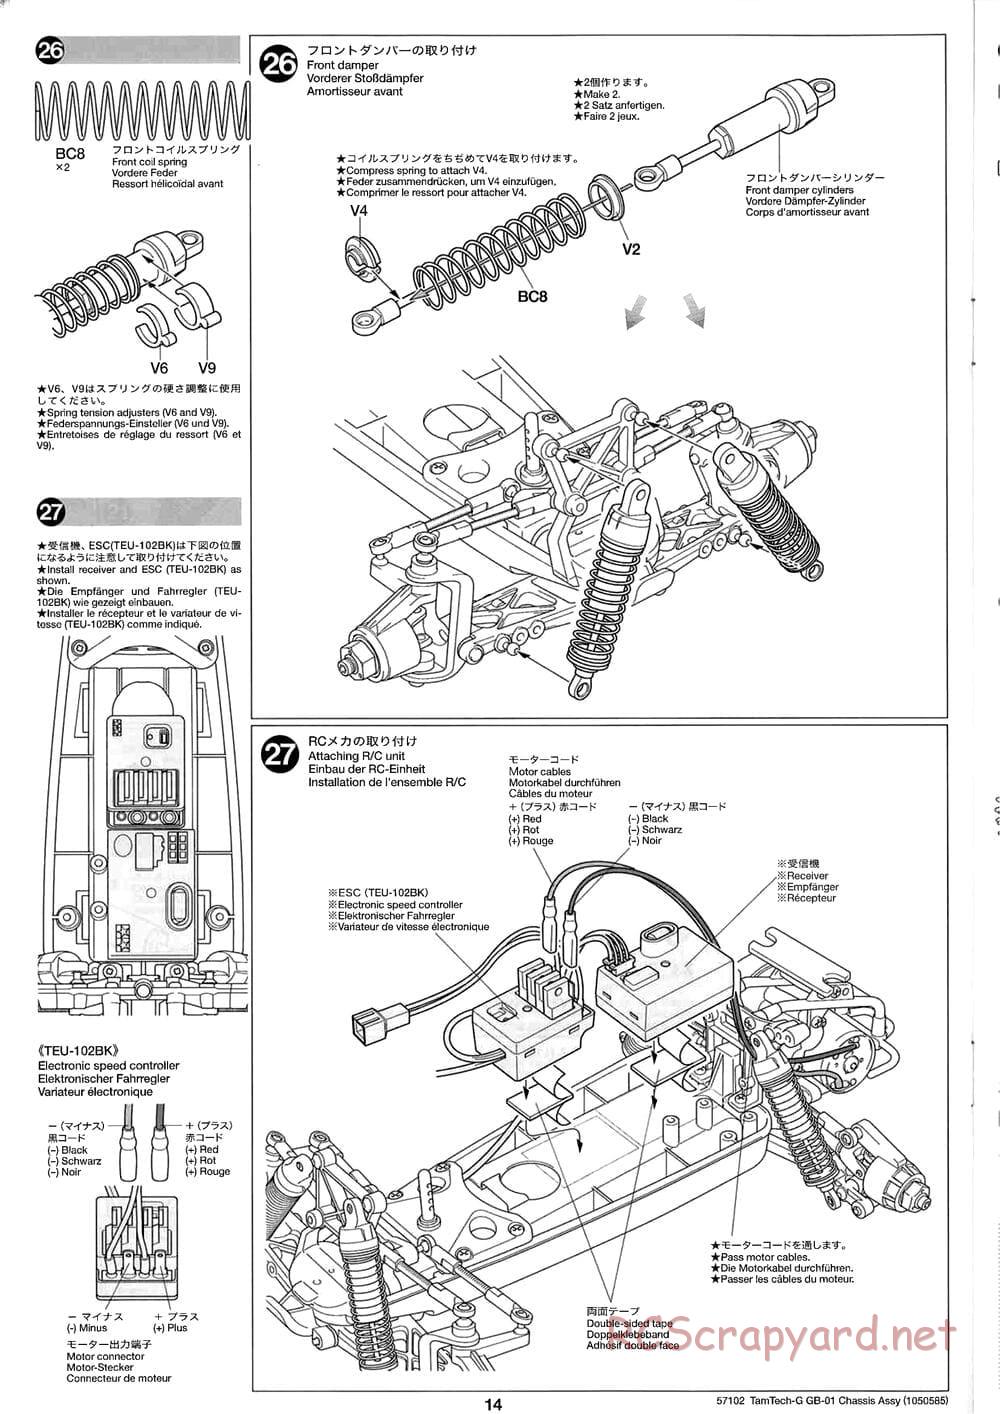 Tamiya - GB-01 Chassis - Manual - Page 14